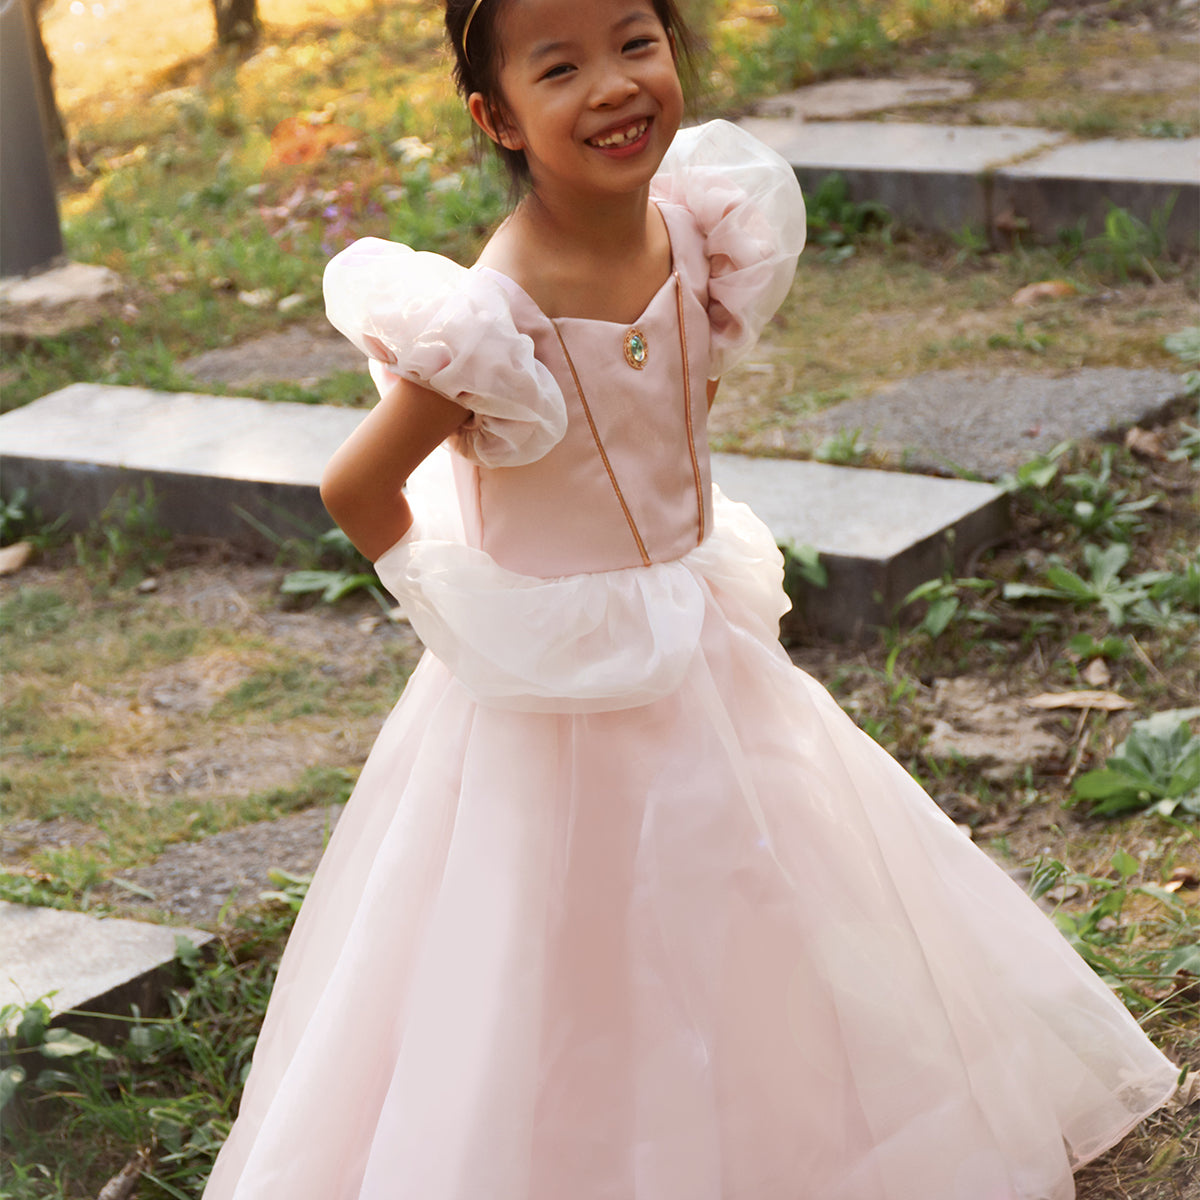 Deze prachtige antique prinsessenjurk van het leuke merk Great Pretenders tovert elke kleine meid om in een koninklijke prinses. Zodra je kindje deze mooie roze jurk aantrekt, kunnen de koninklijke avonturen beginnen. VanZus